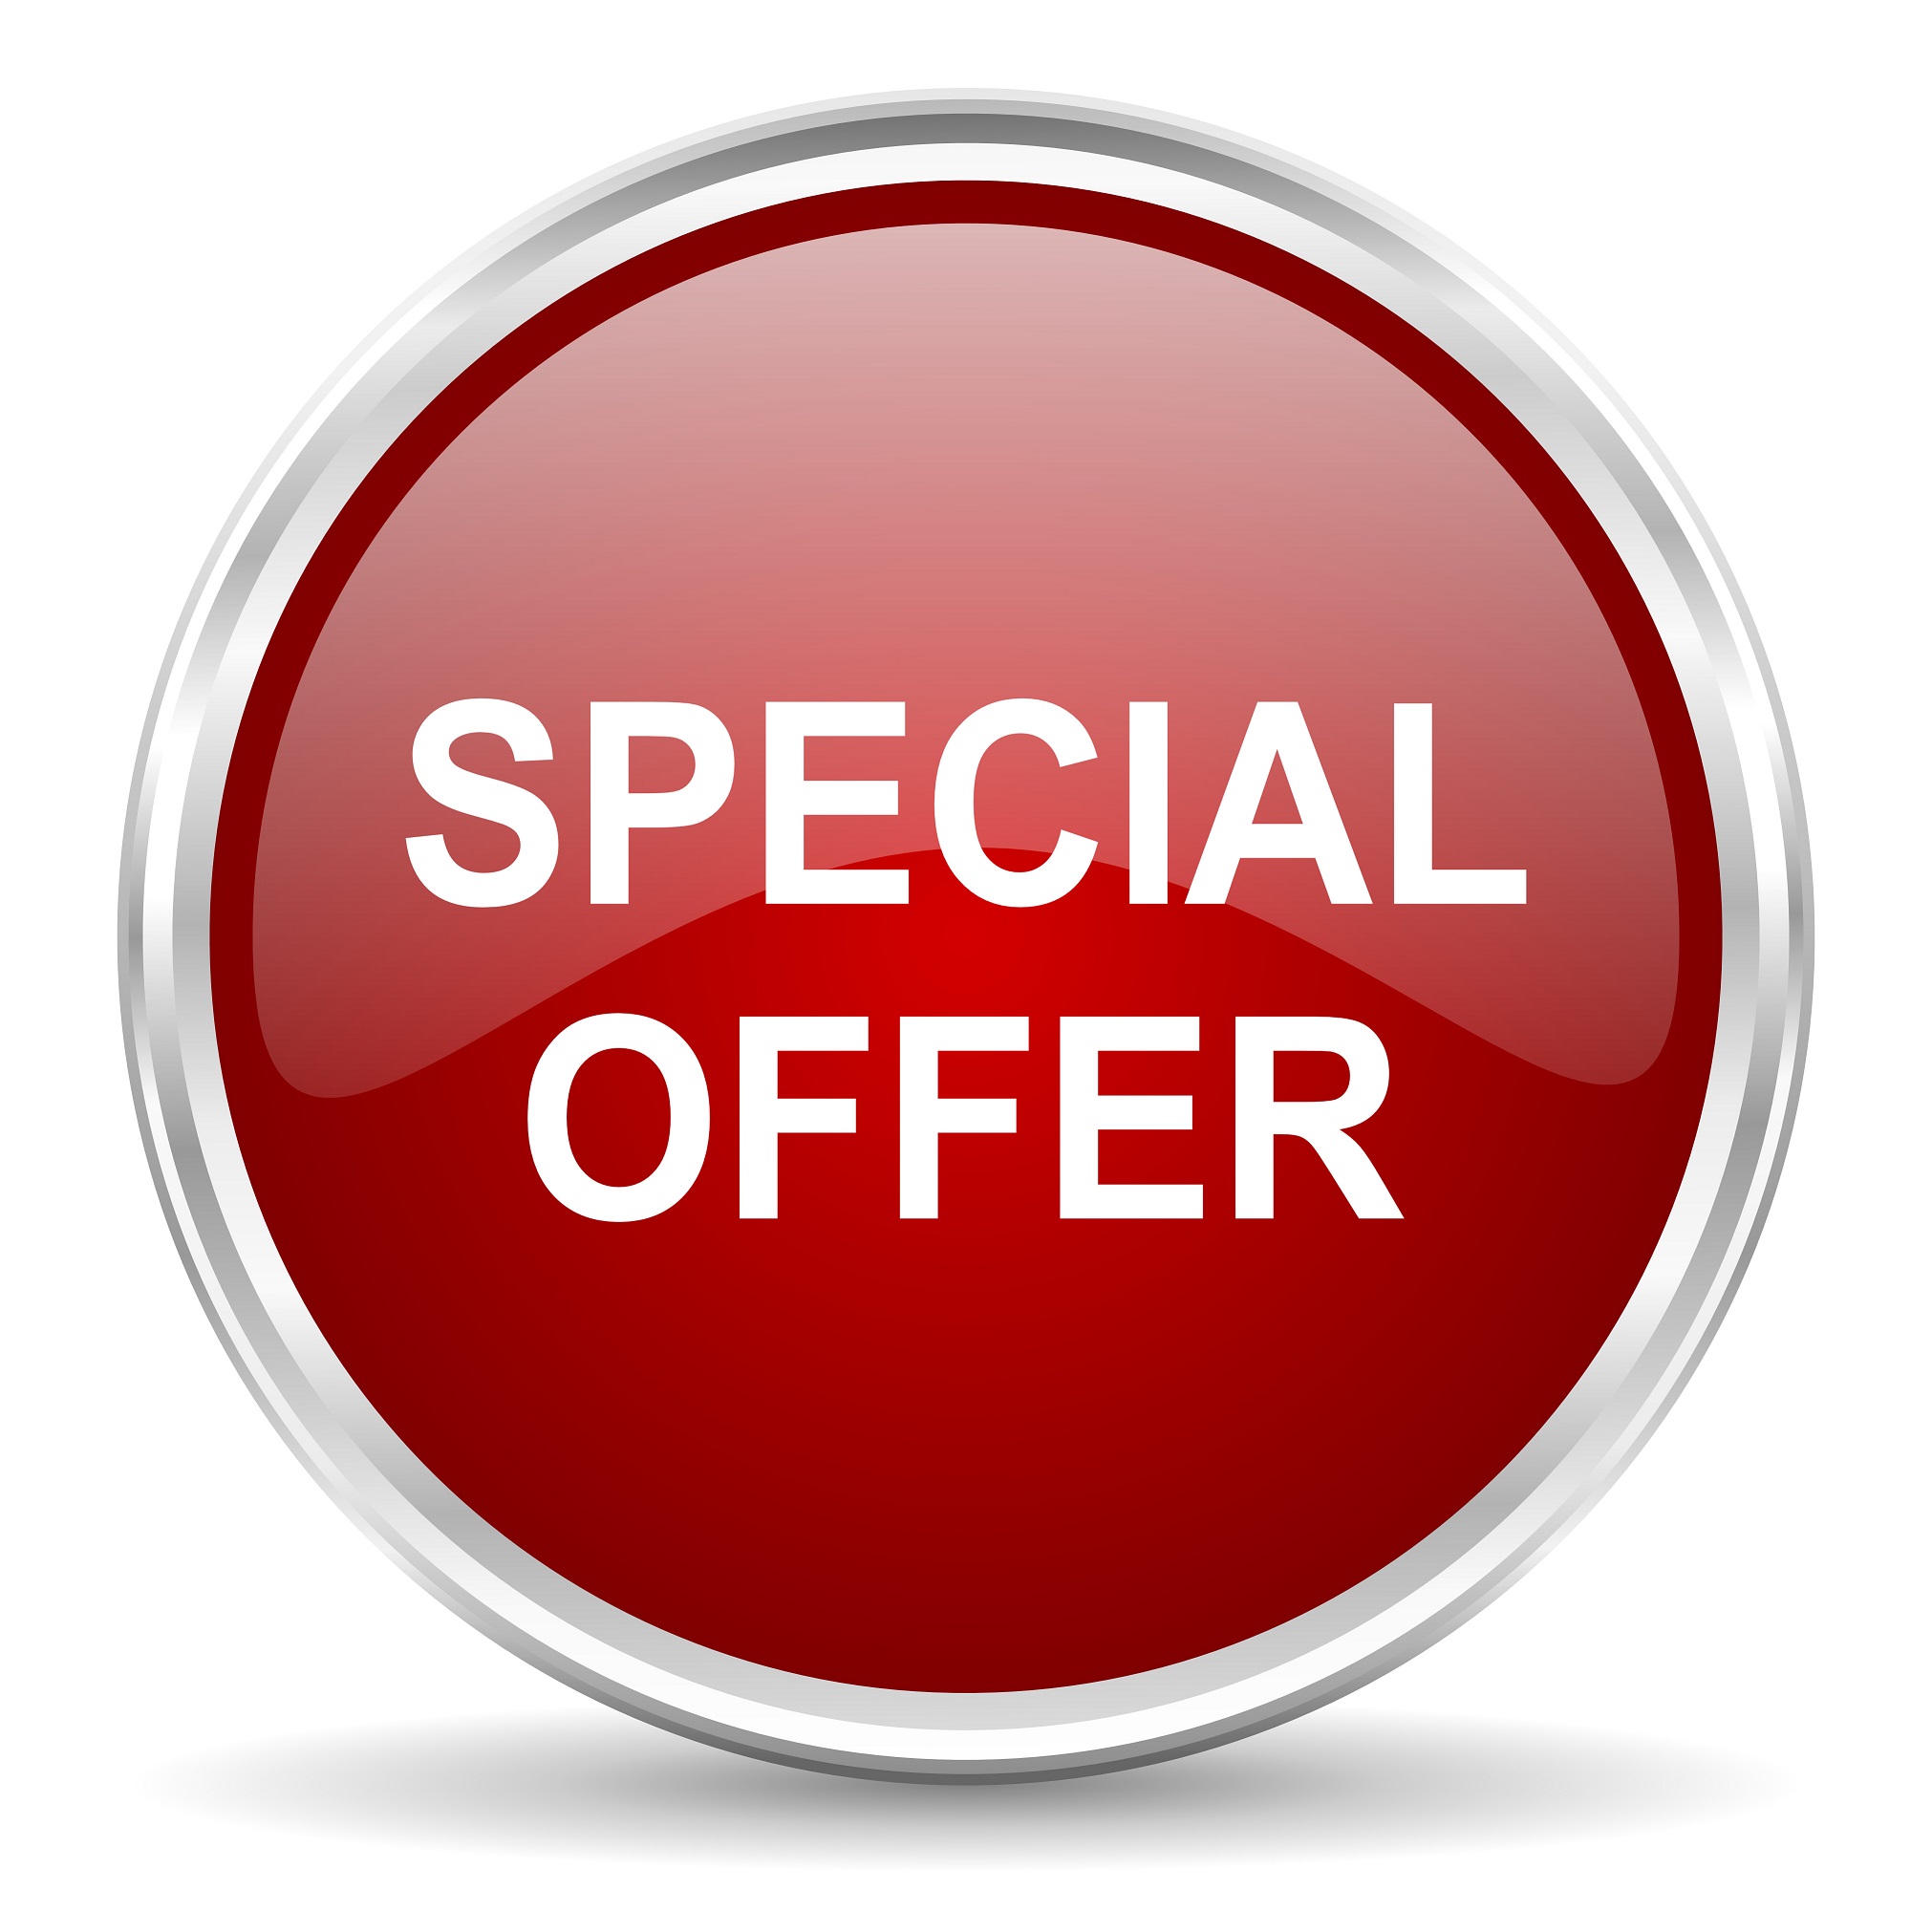 T me offer scans. Офферы картинки. Special offer. Special offer иконка. Special offer картинка.